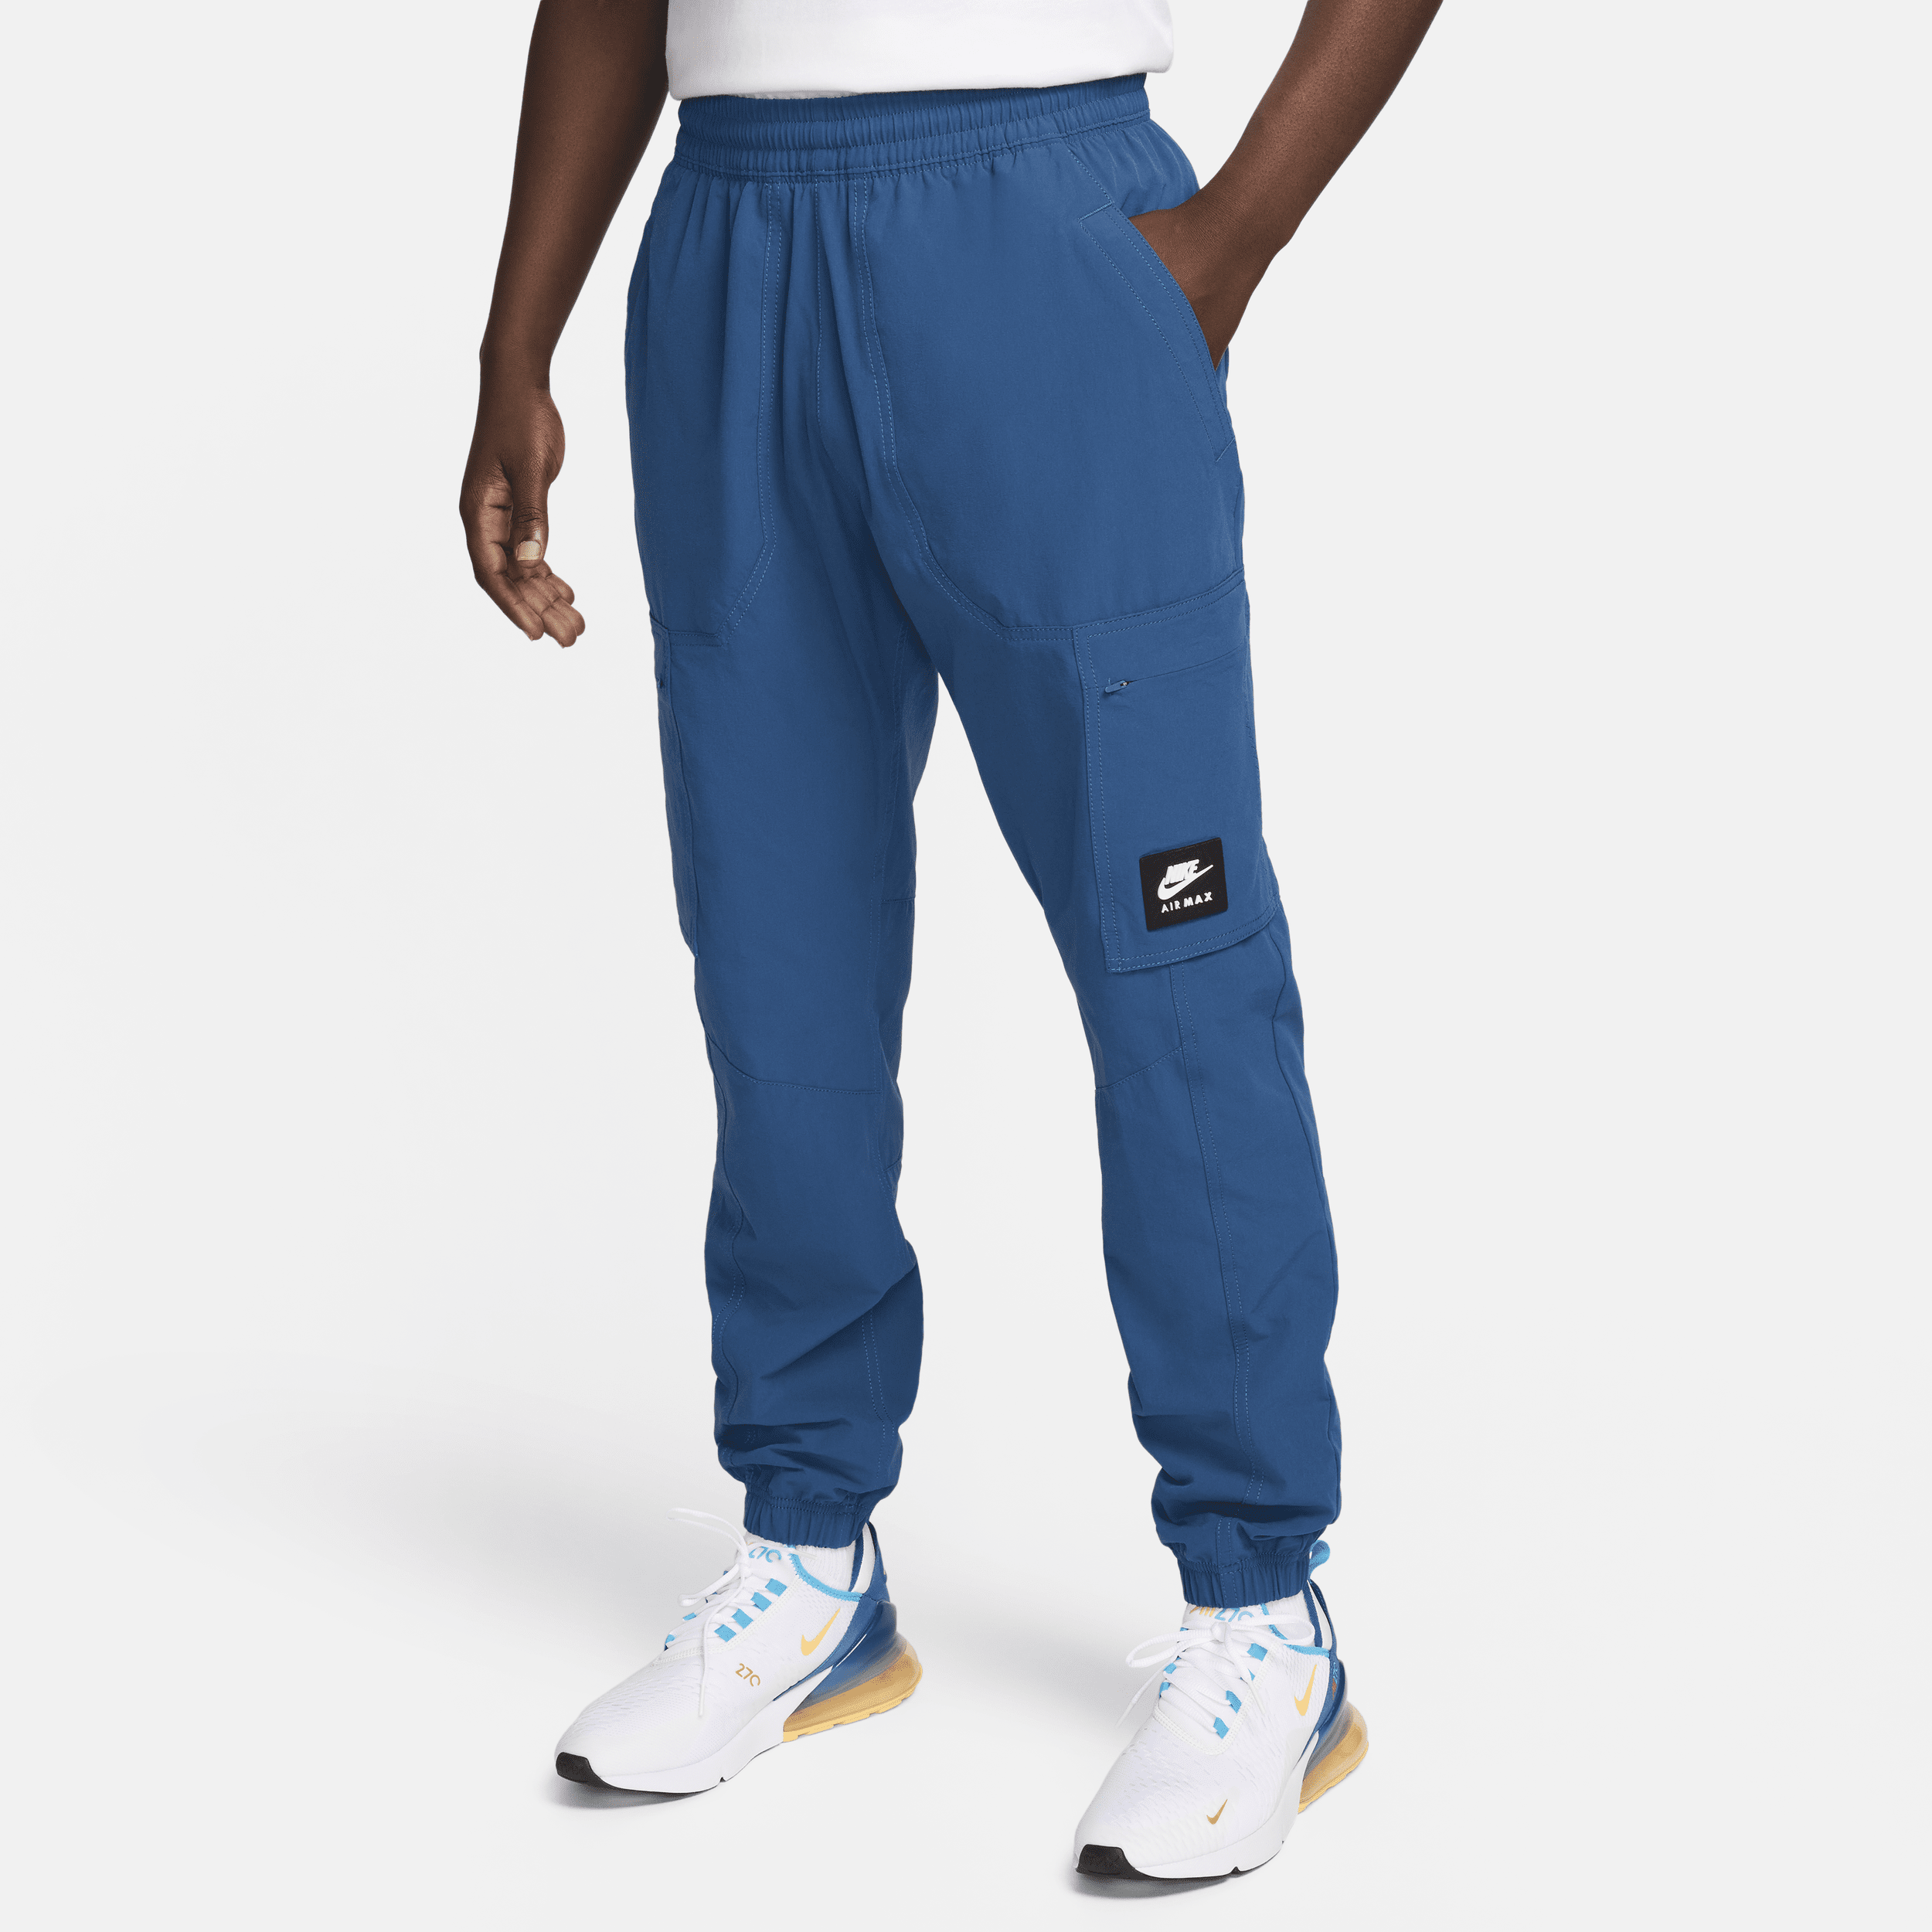 Nike Air Max Pantalón cargo de tejido Woven - Hombre - Azul